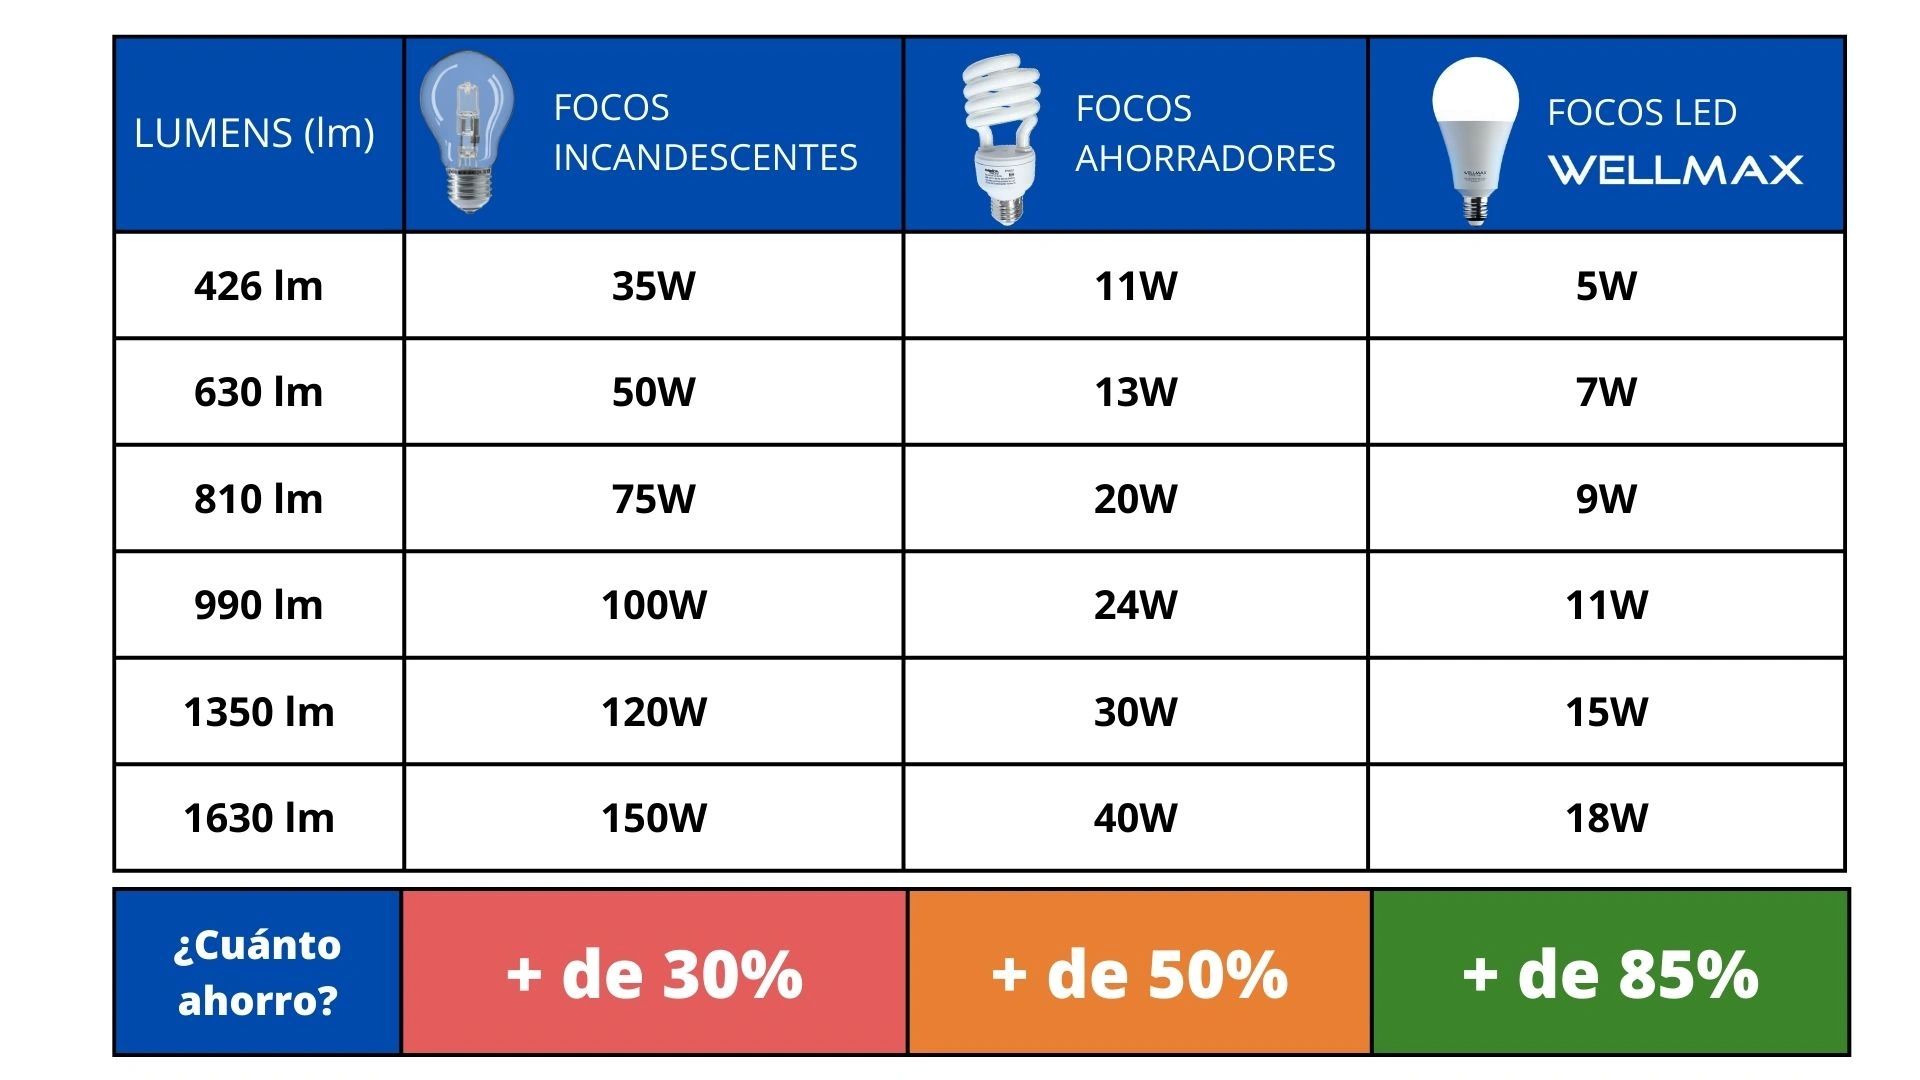 LED vs. focos ahorradores: ¿cuál es la mejor opción de ahorro?